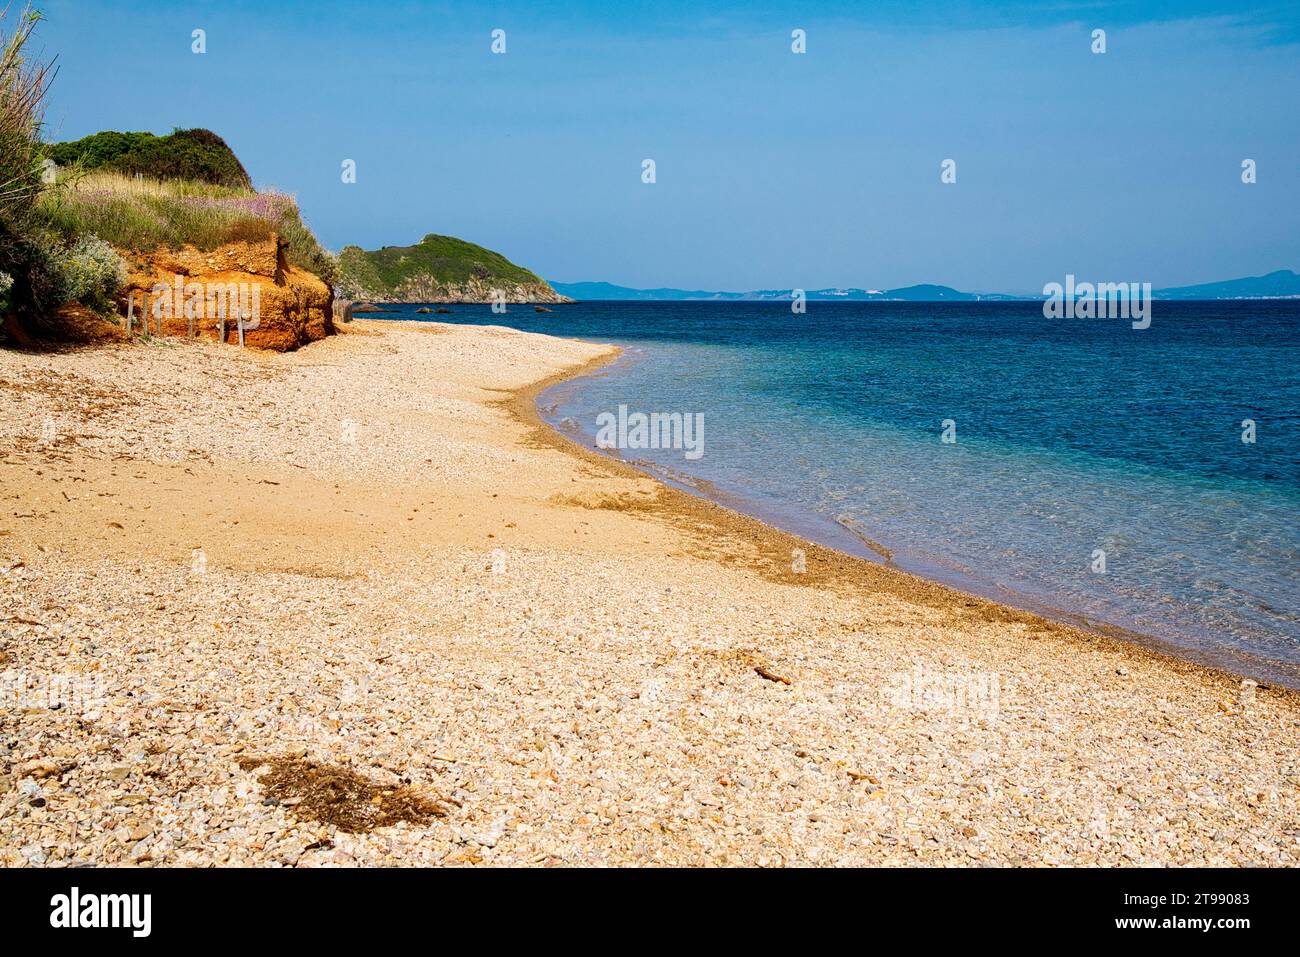 le bord de mer dans la partie ouest de la presquile de Giens appartenant au parc national de Port-cros avec ses criques ses ilots ses plages sa Nature Stockfoto